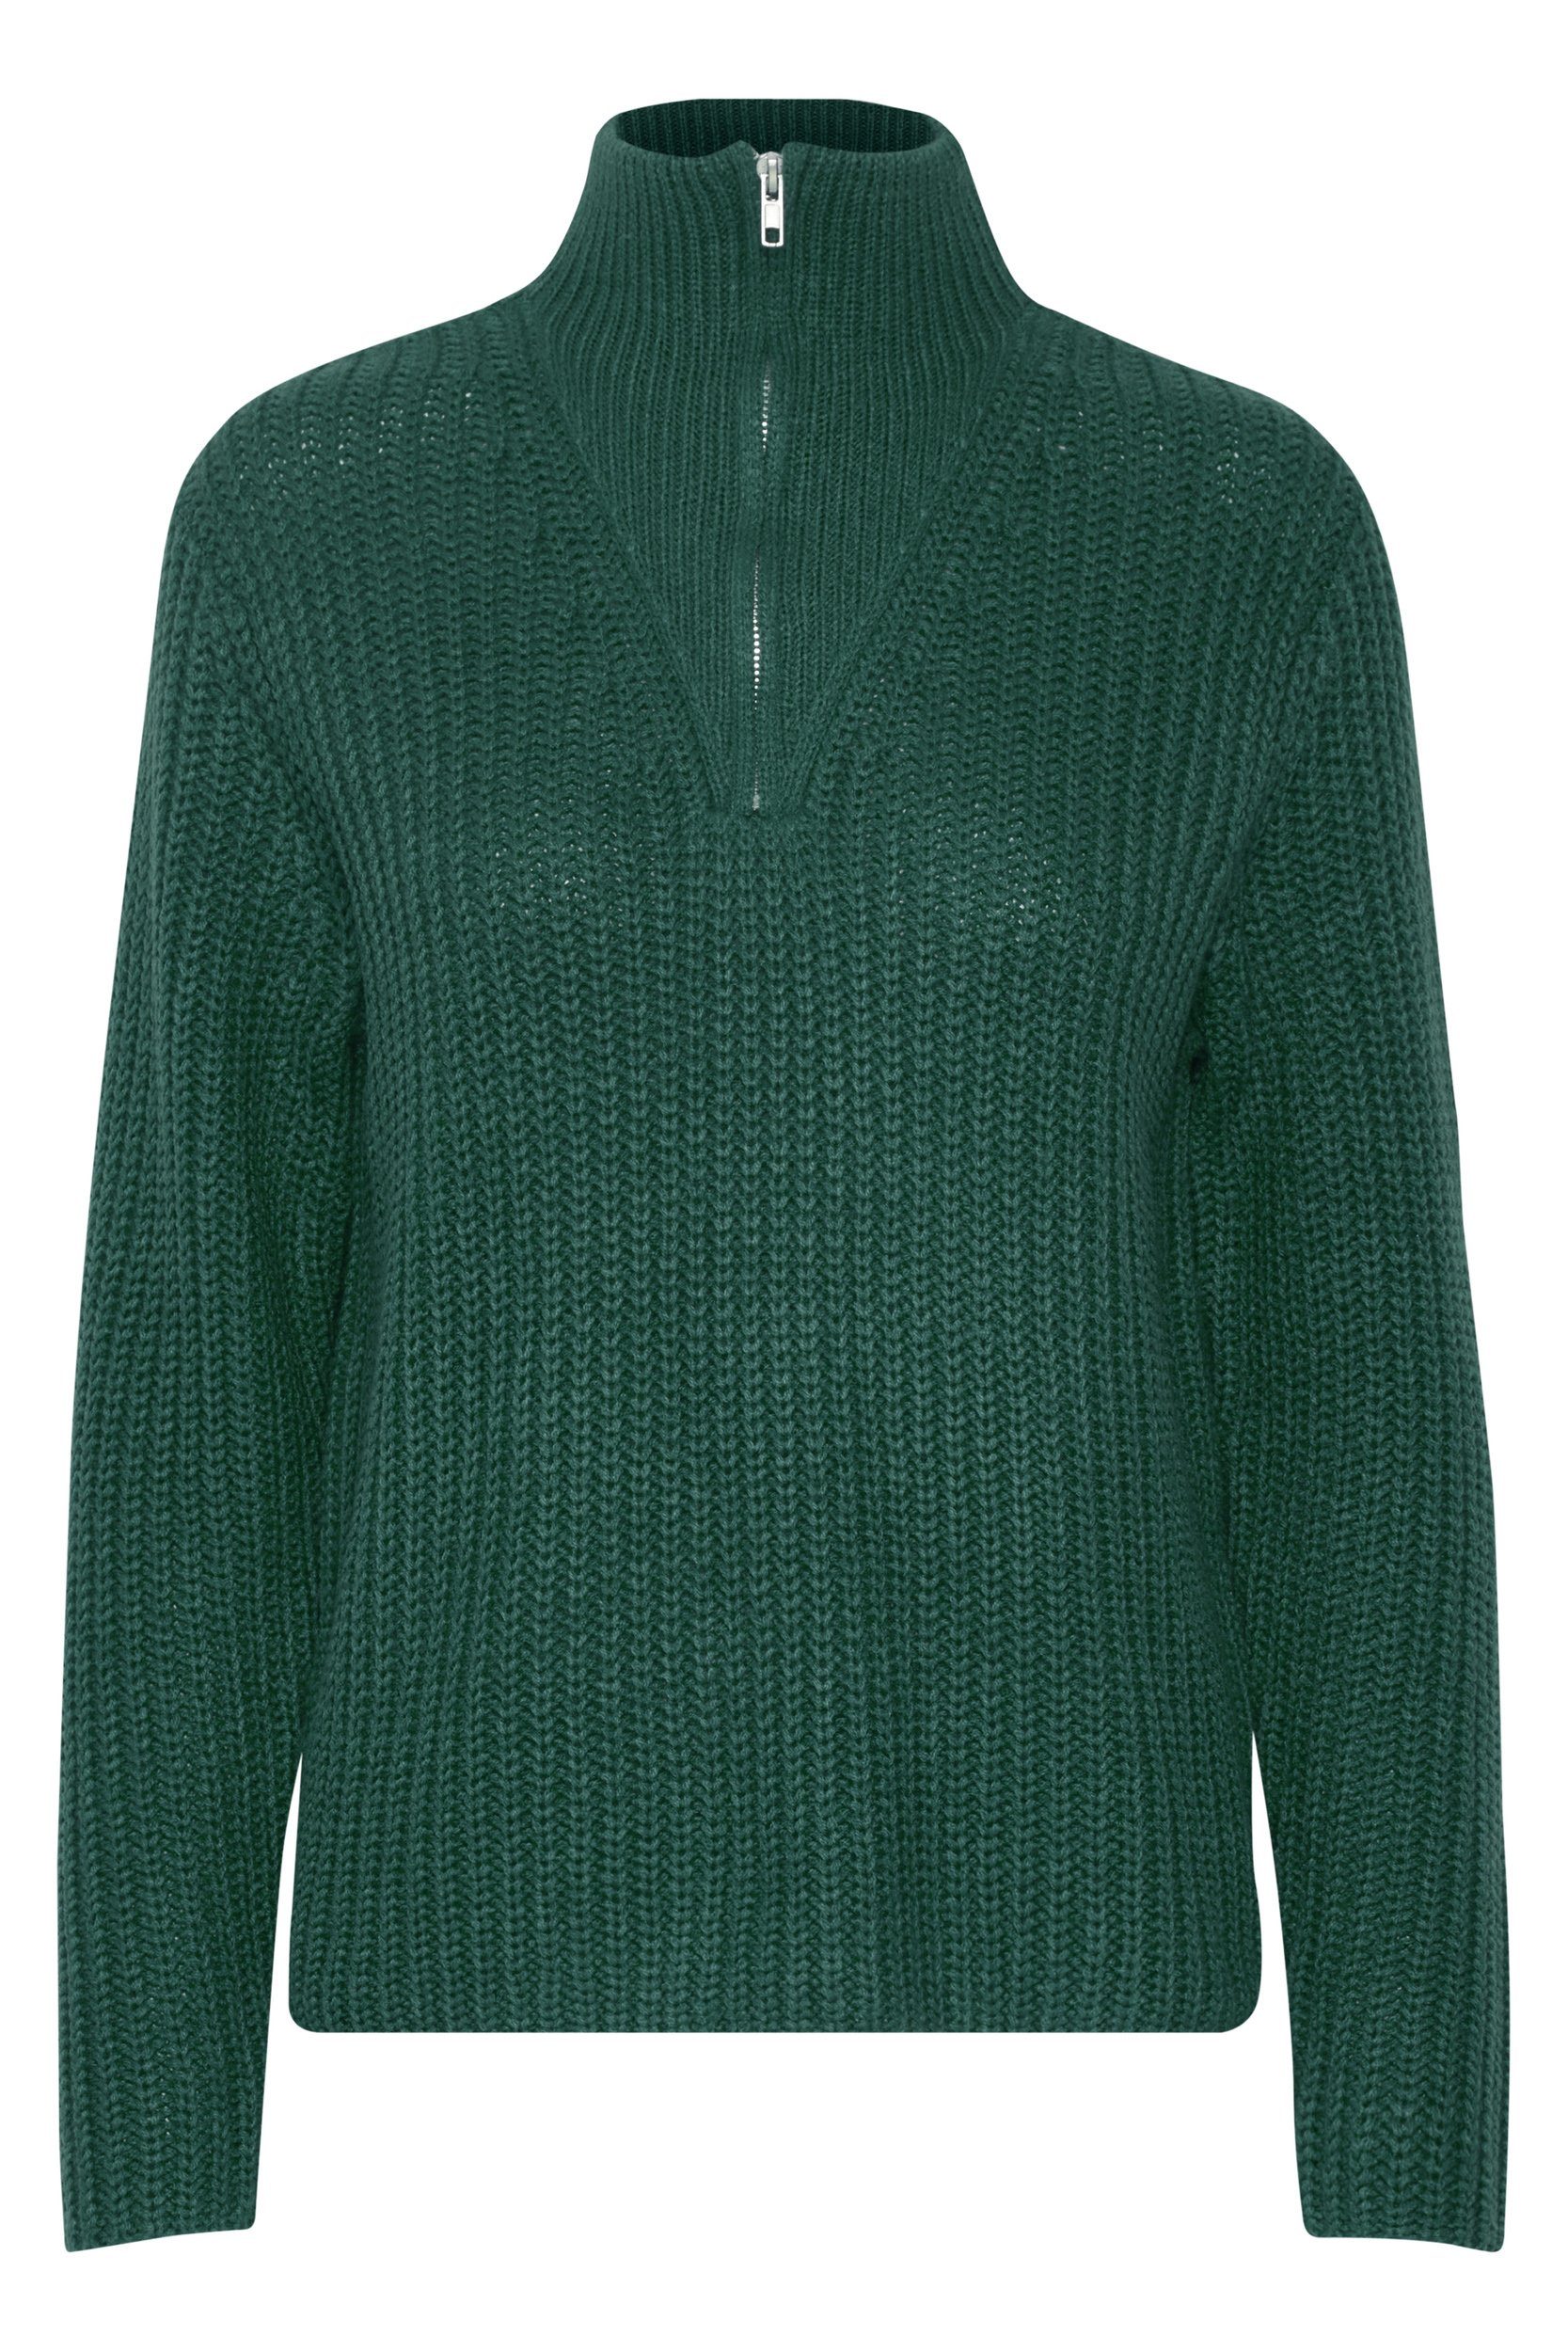 b.young Strickpullover Grobstrick Pullover Troyer Sweater mit Reißverschluss Kragen 6677 in Petrol